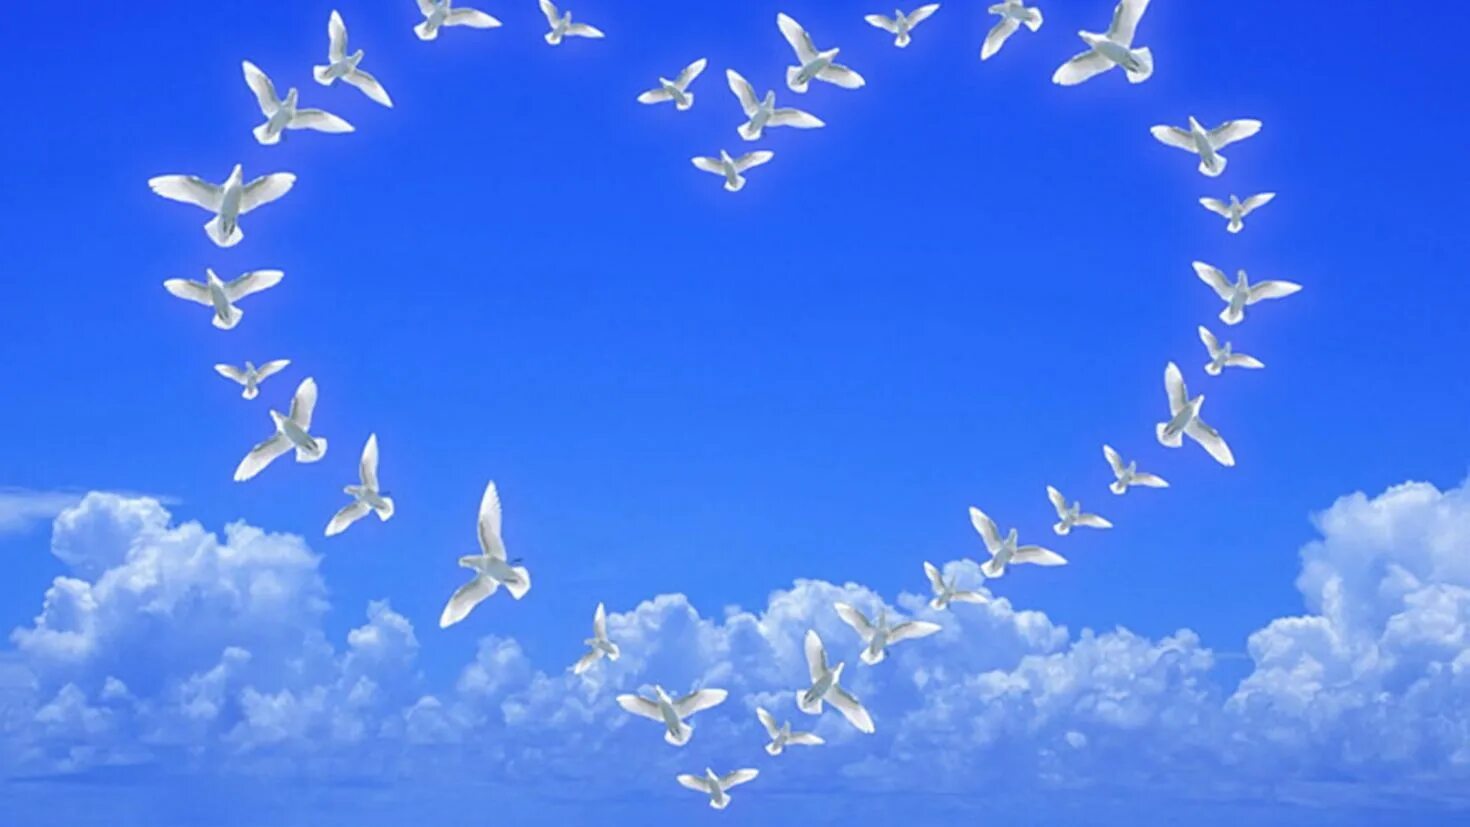 Сердечко в небе. Птицы в небе. Голубое мирное небо. Голуби в небе. Как много на свете хороших